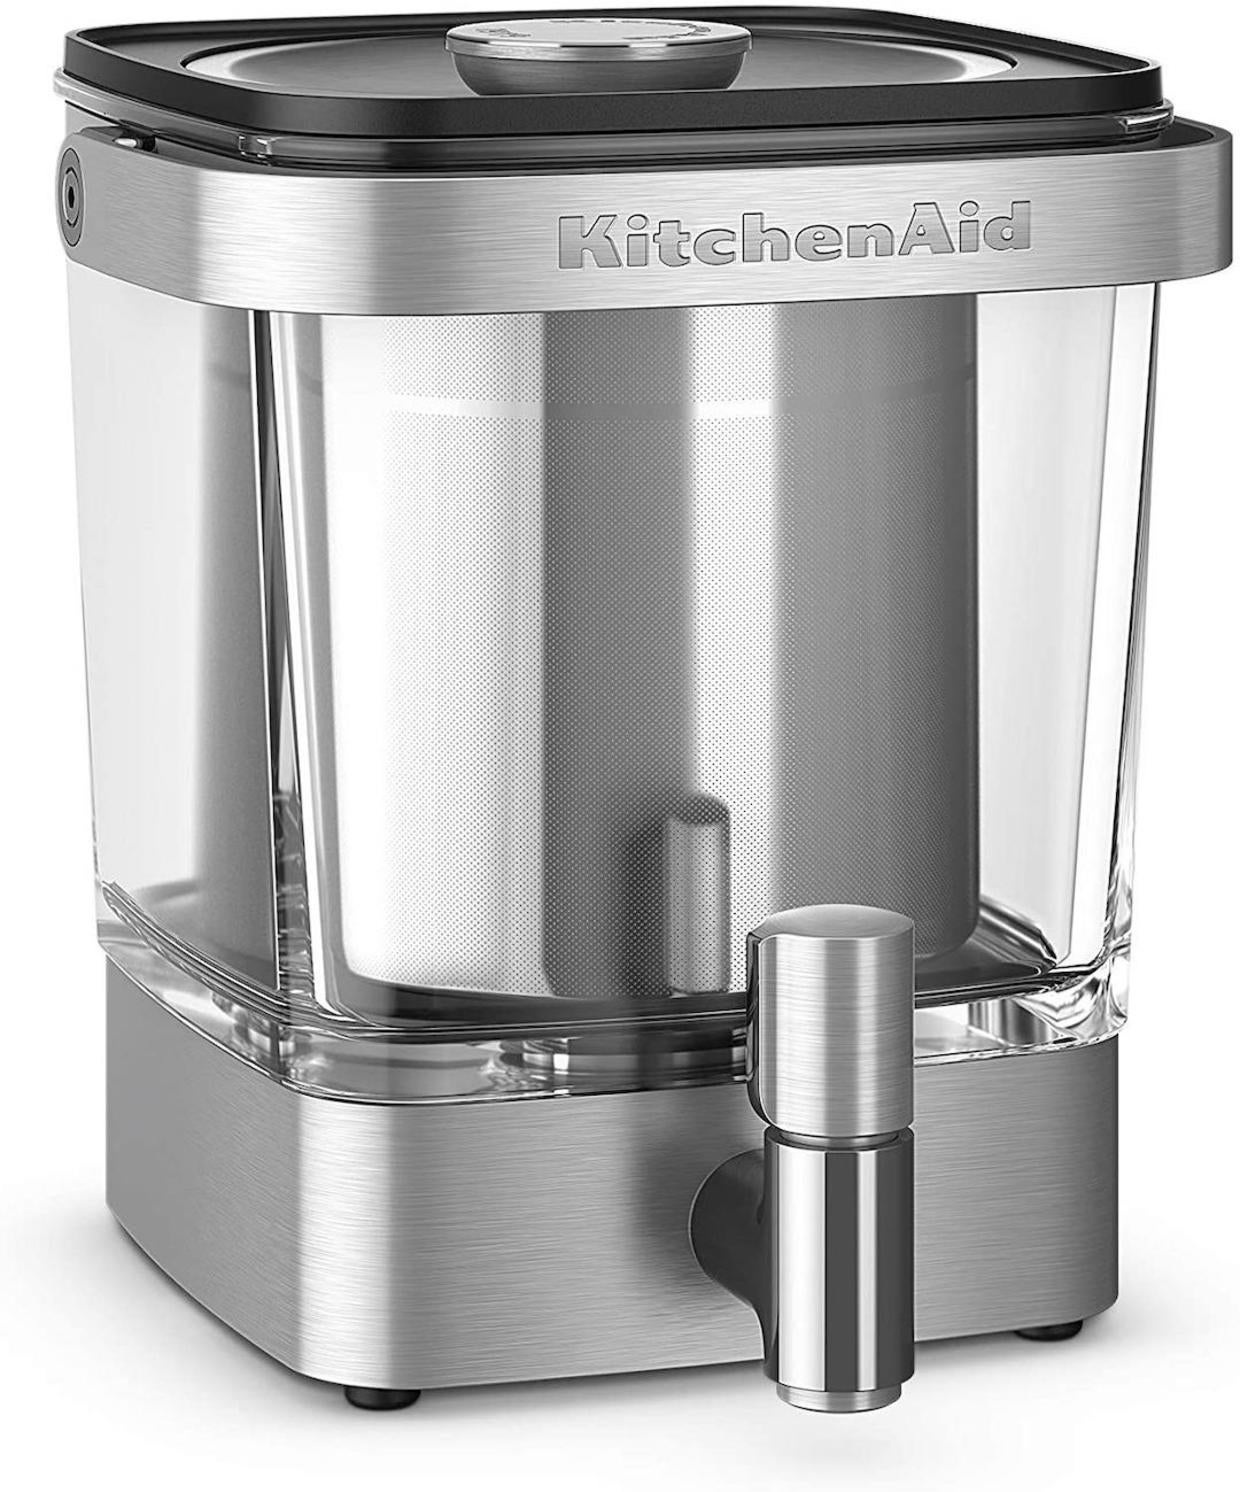 KitchenAid XL cold-brew coffee maker